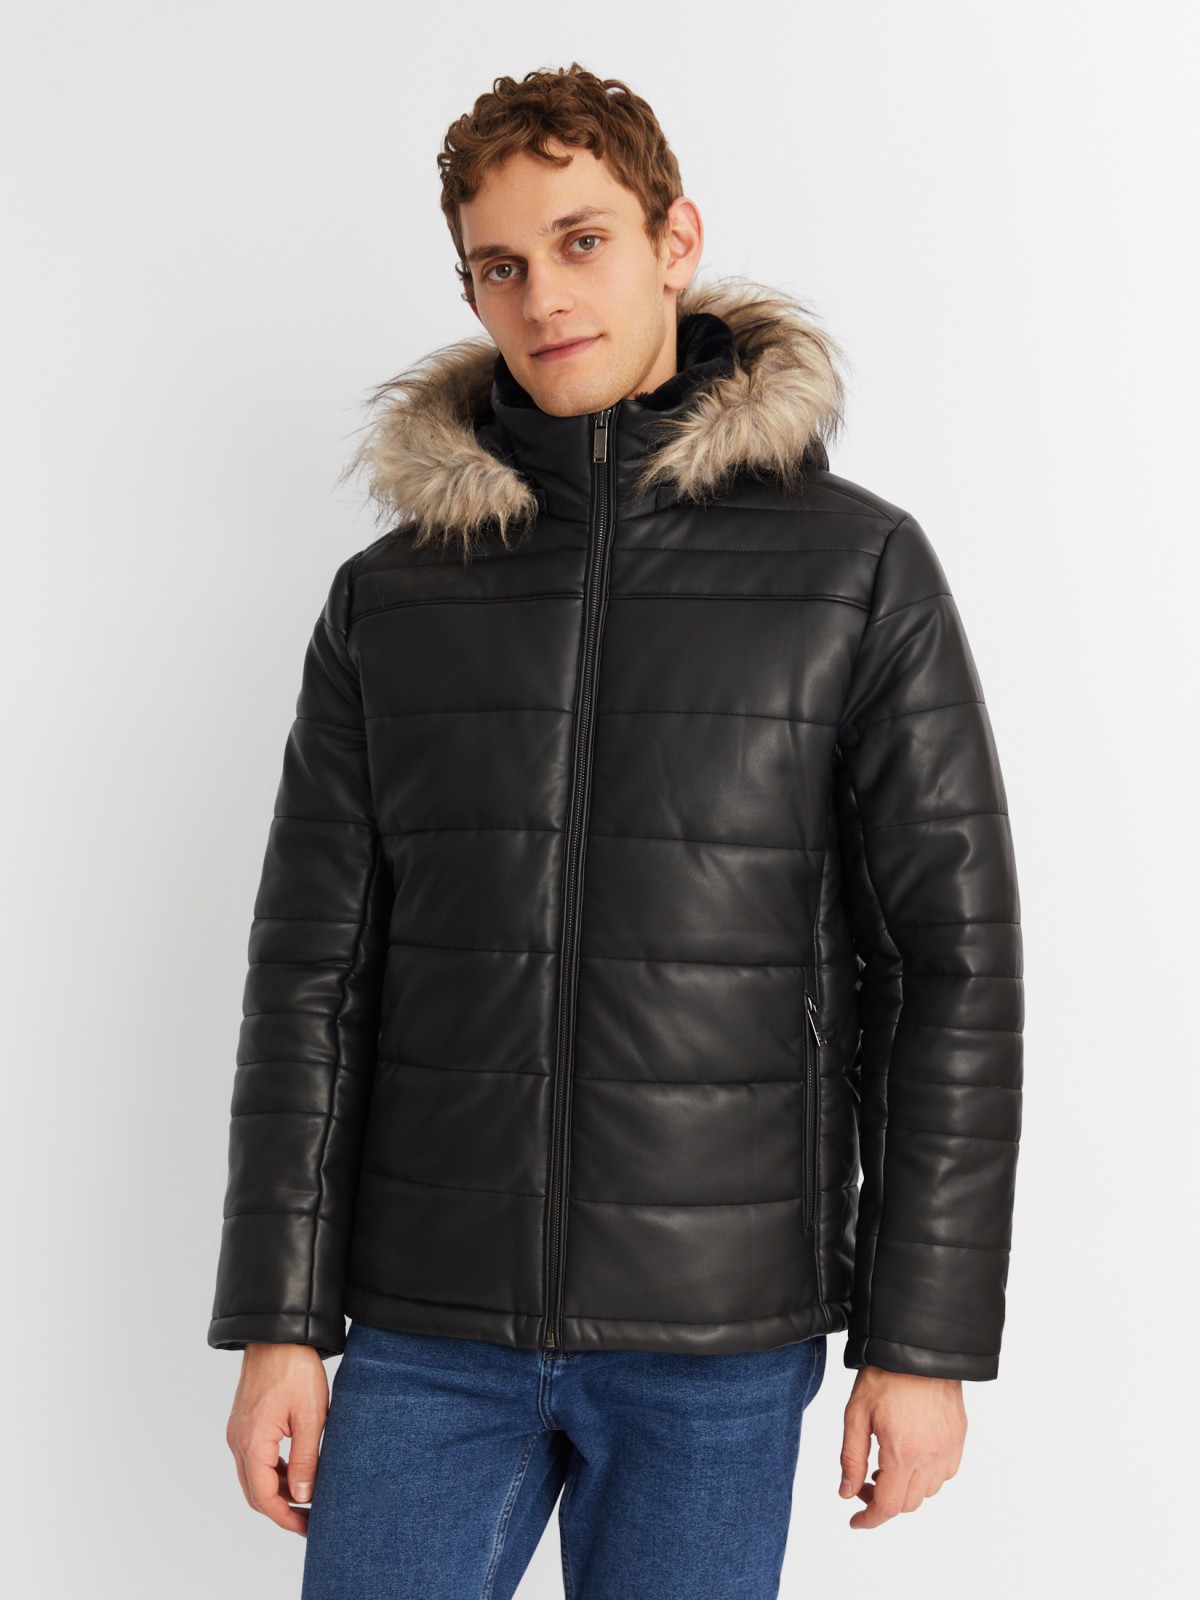 Тёплая куртка из экокожи со съёмным капюшоном и опушкой из экомеха zolla 013425102034, цвет черный, размер L - фото 3